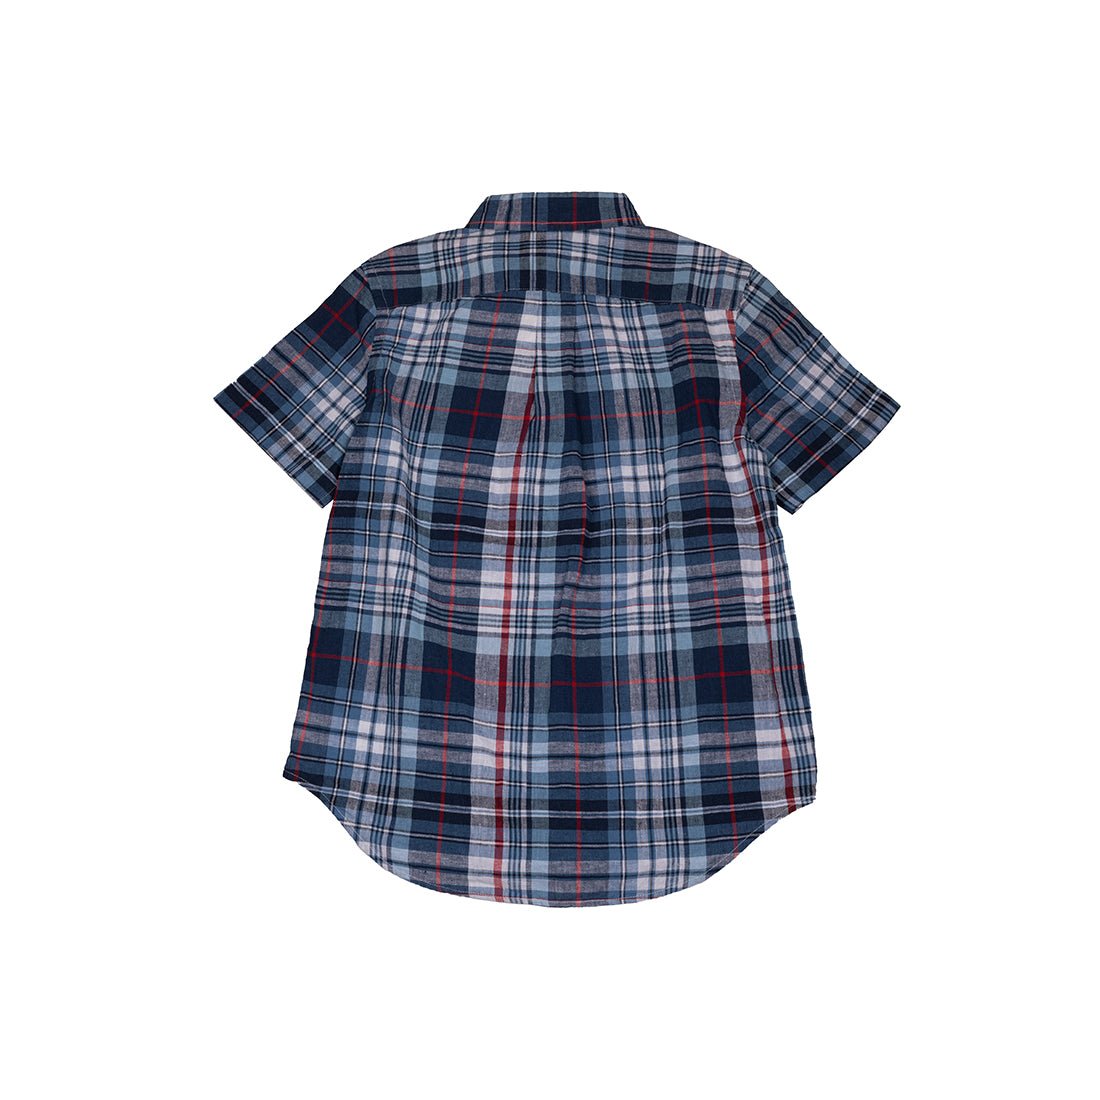 Ralph Lauren Brand New Boys Shirt - mymadstore.com